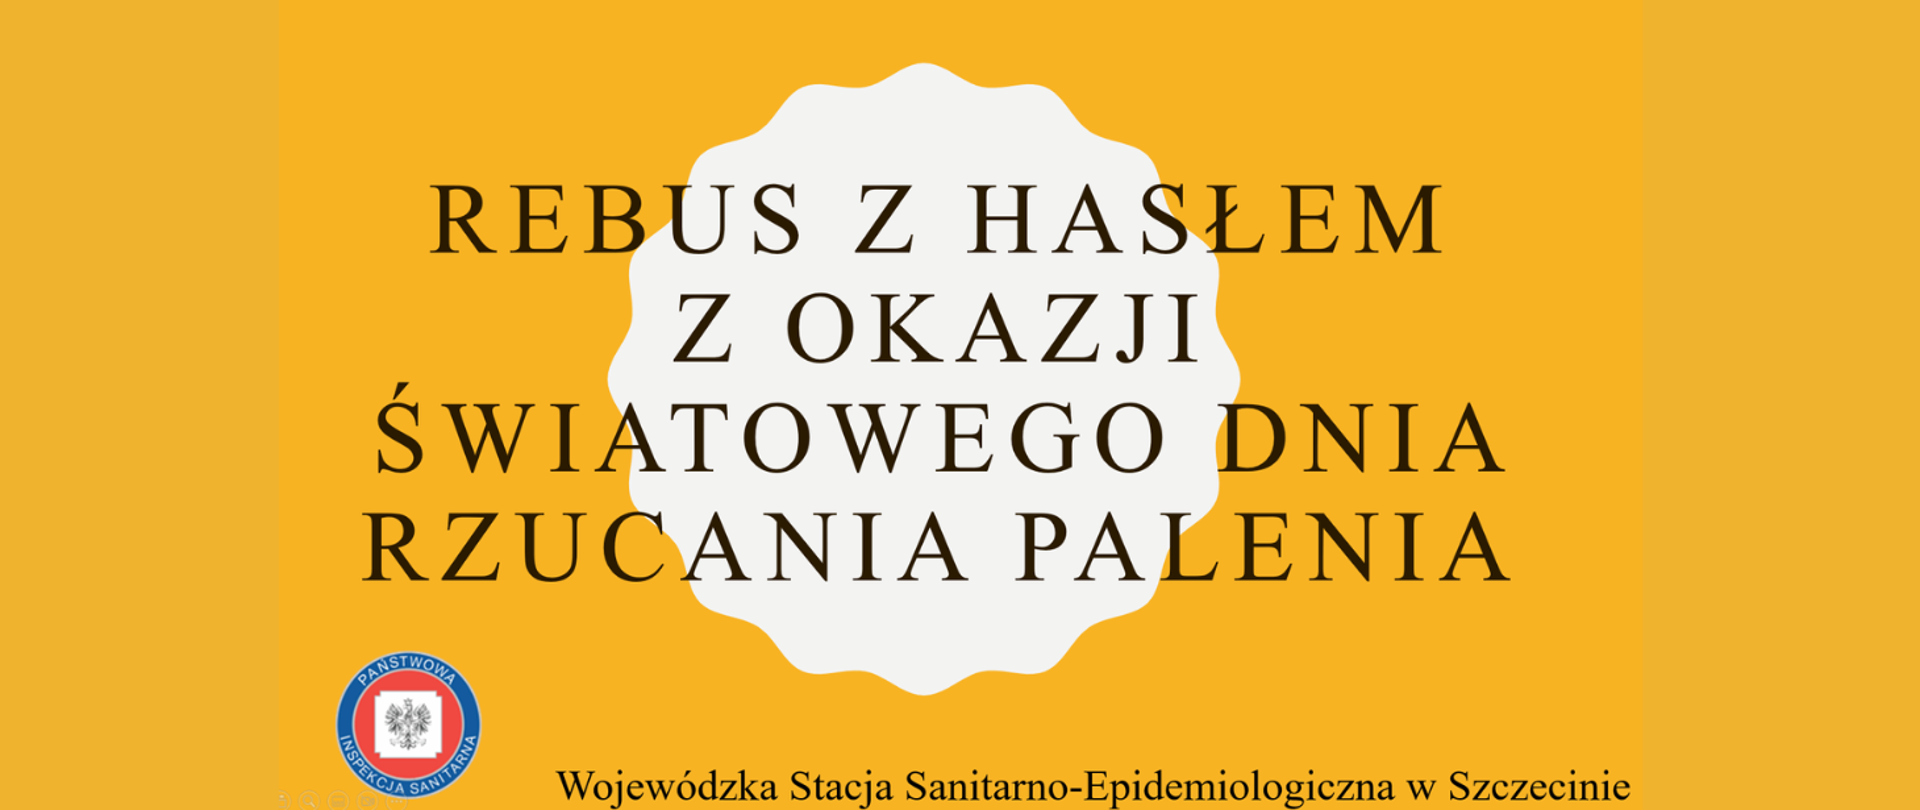 Grafika przedstawia napis związany z tematyką konkursu- Rebus z hasłem z okazji Światowego Dnia Rzucania Palenia. Wojewódzka Stacja Sanitarno-Epidemiologiczna w Szczecinie.
